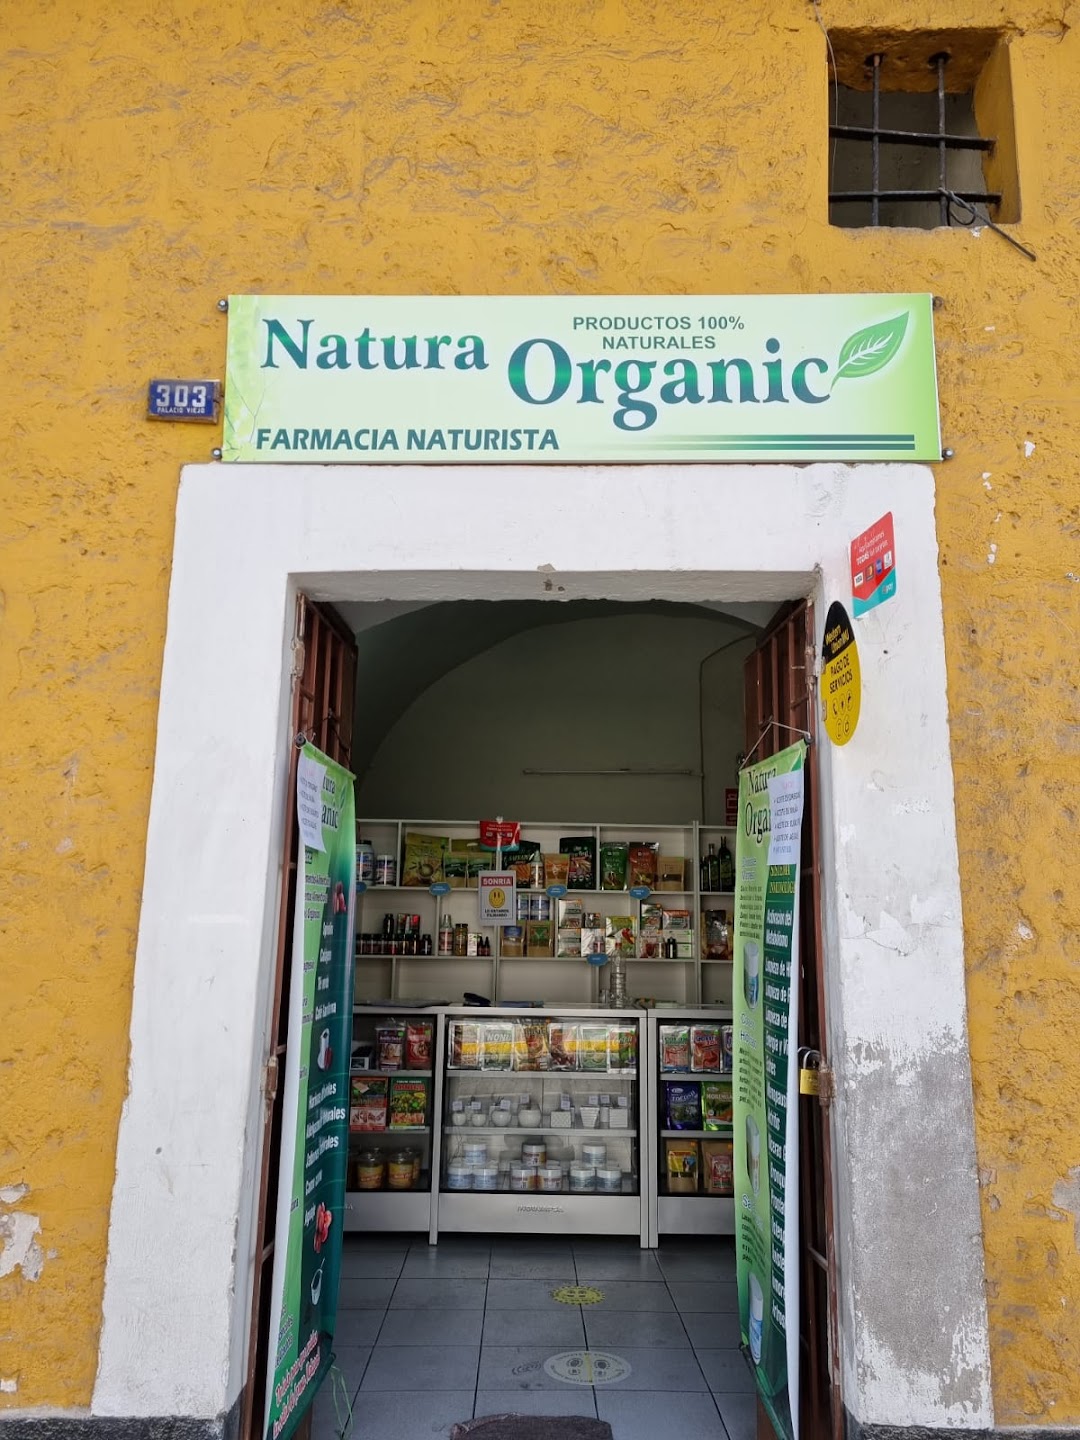 Natura Organic